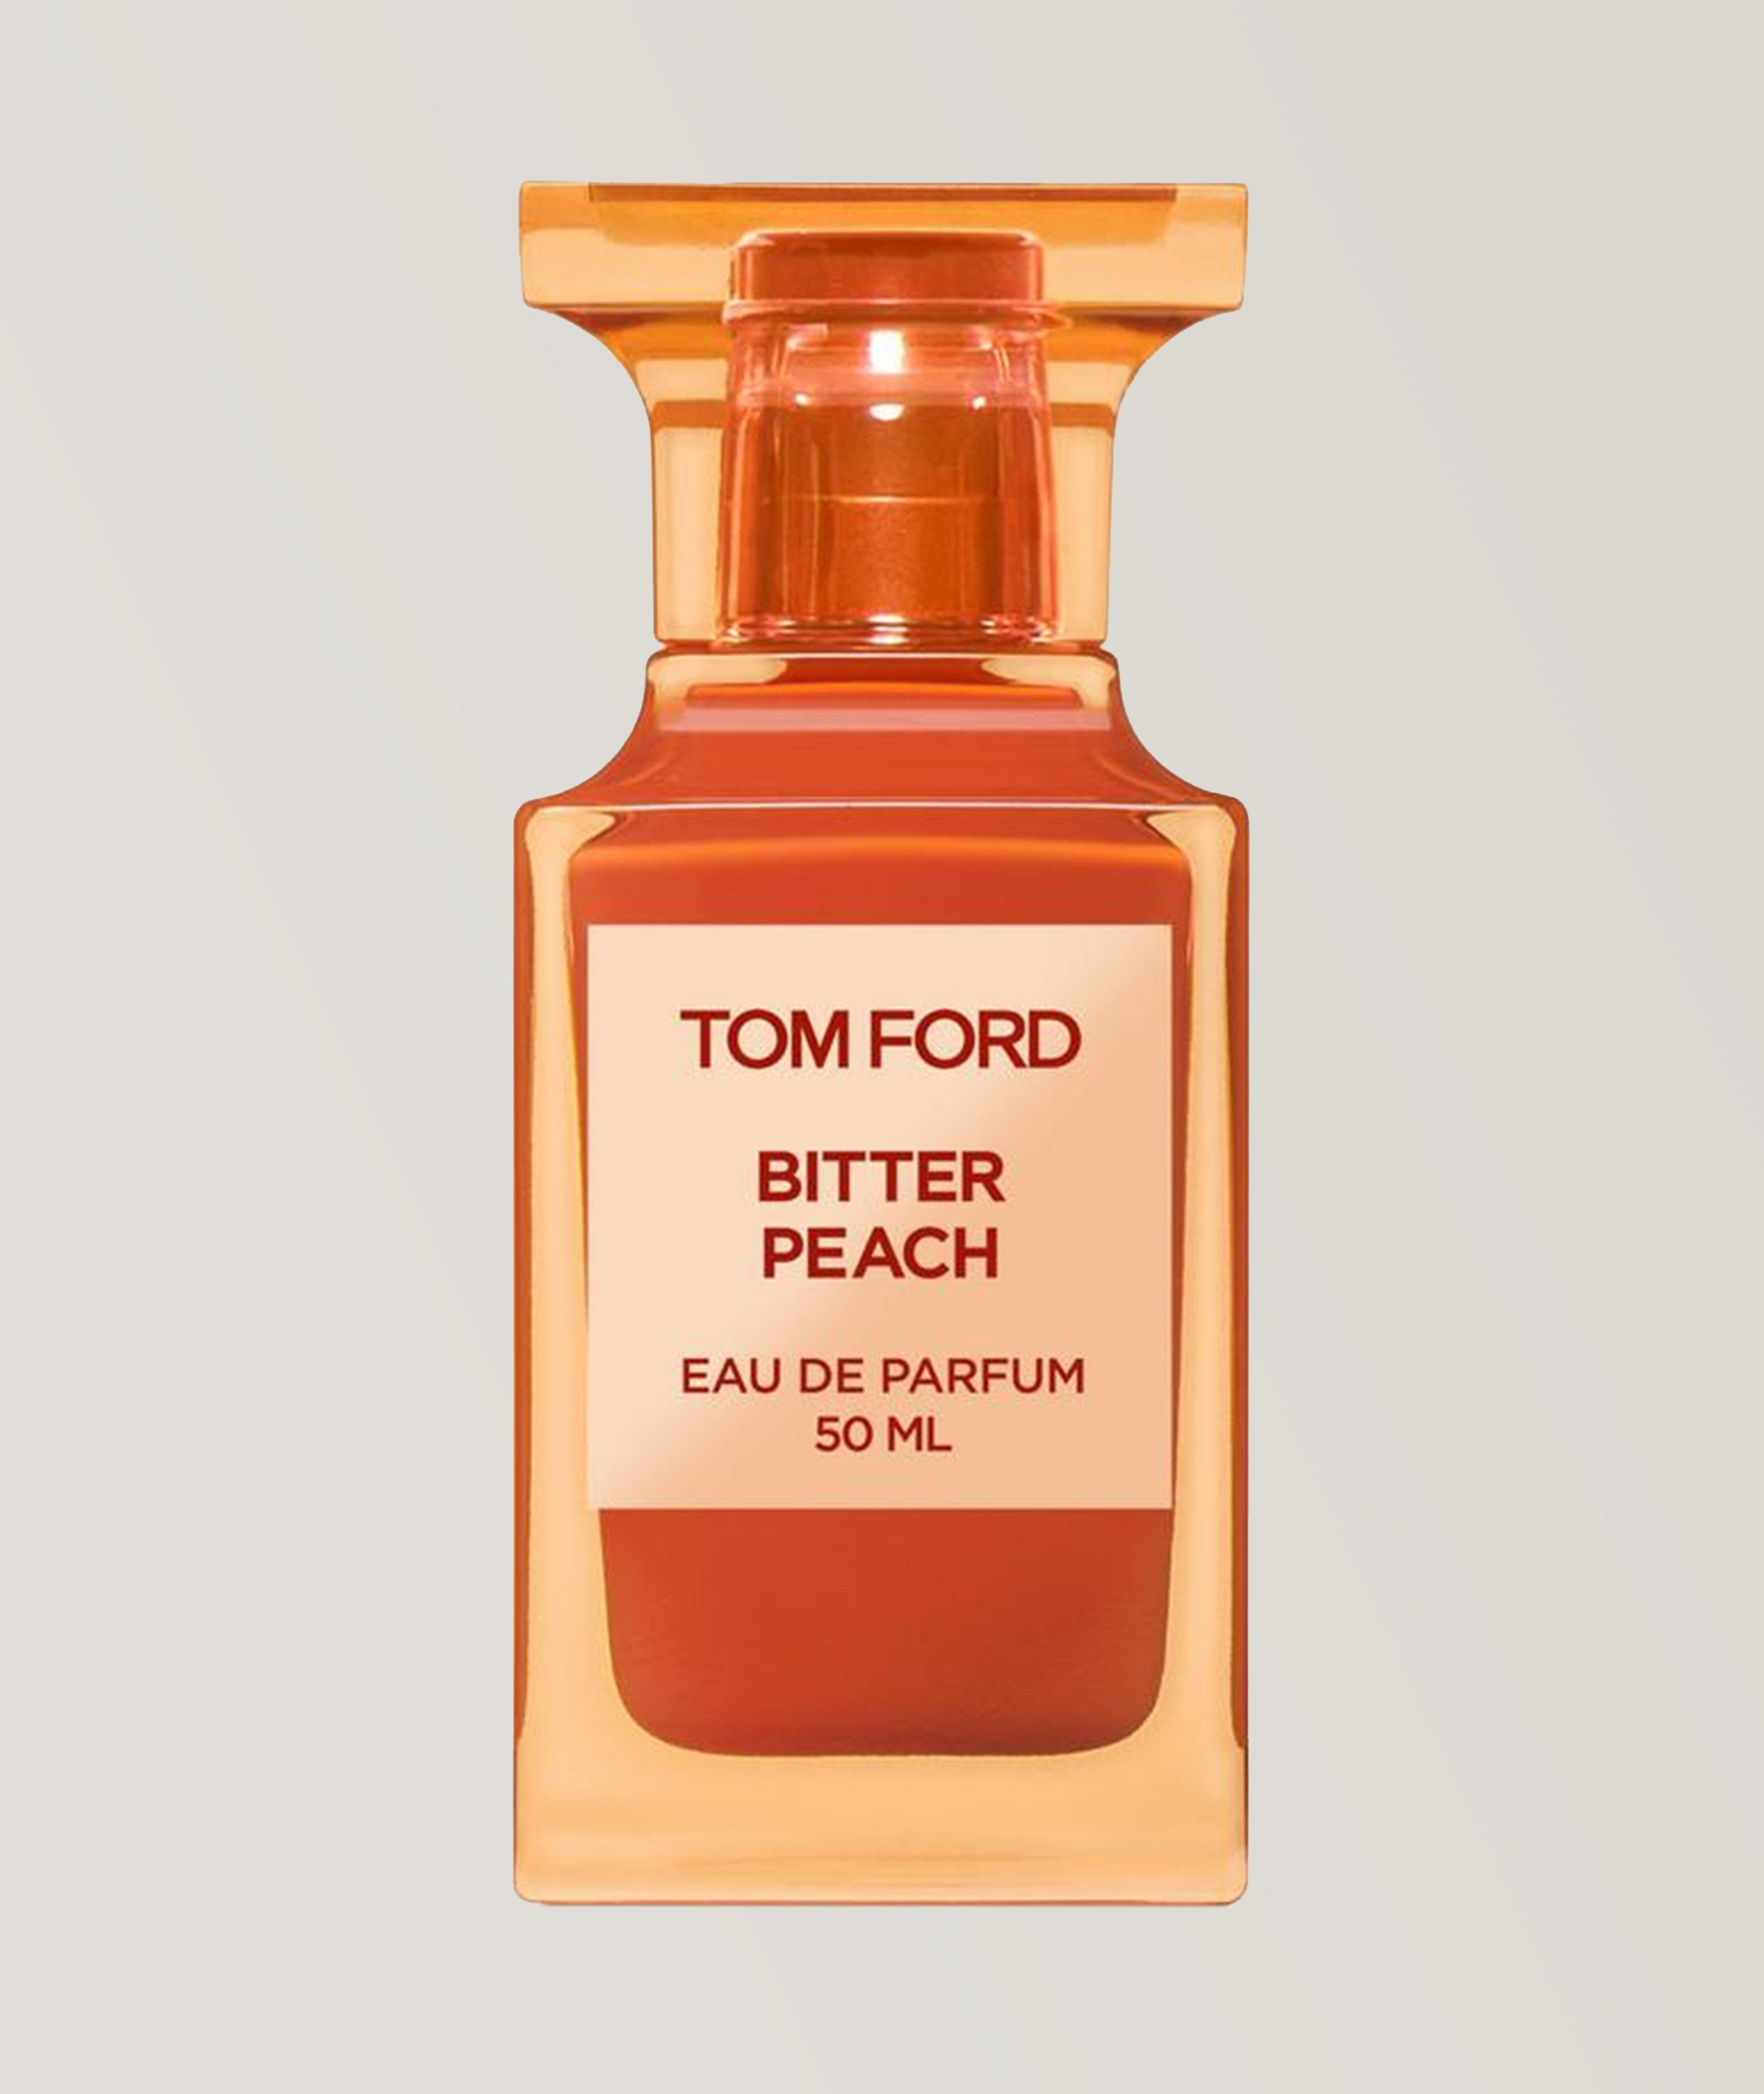 TOM FORD Eau de parfum Bitter Peach (50 ml)